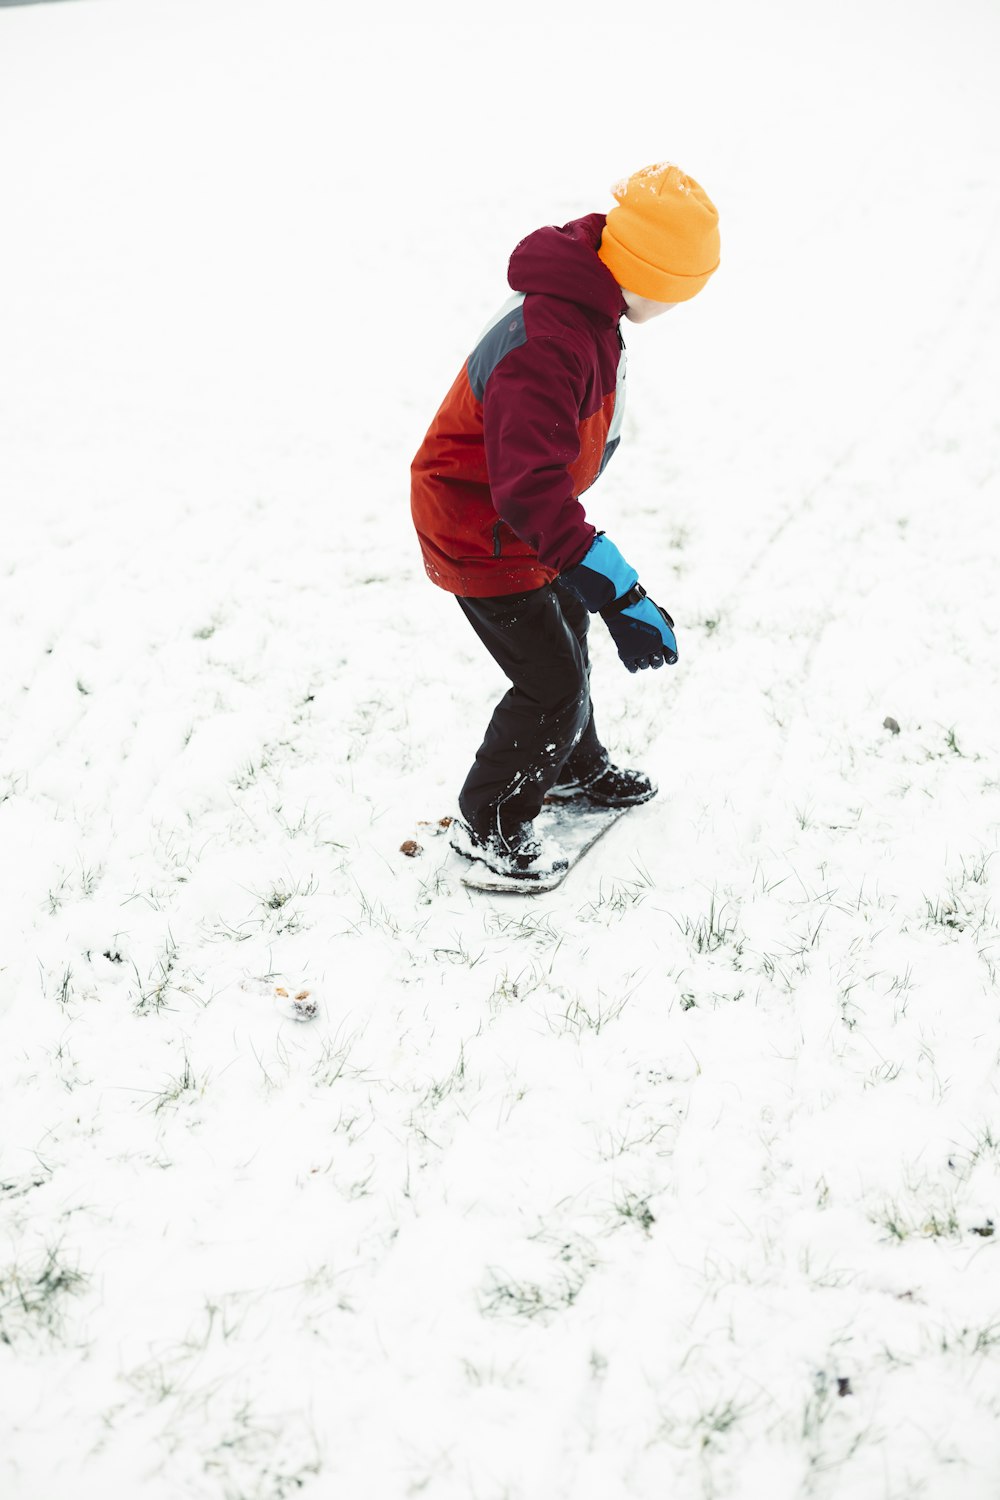 Un jeune garçon faisant de la planche à neige sur une pente enneigée